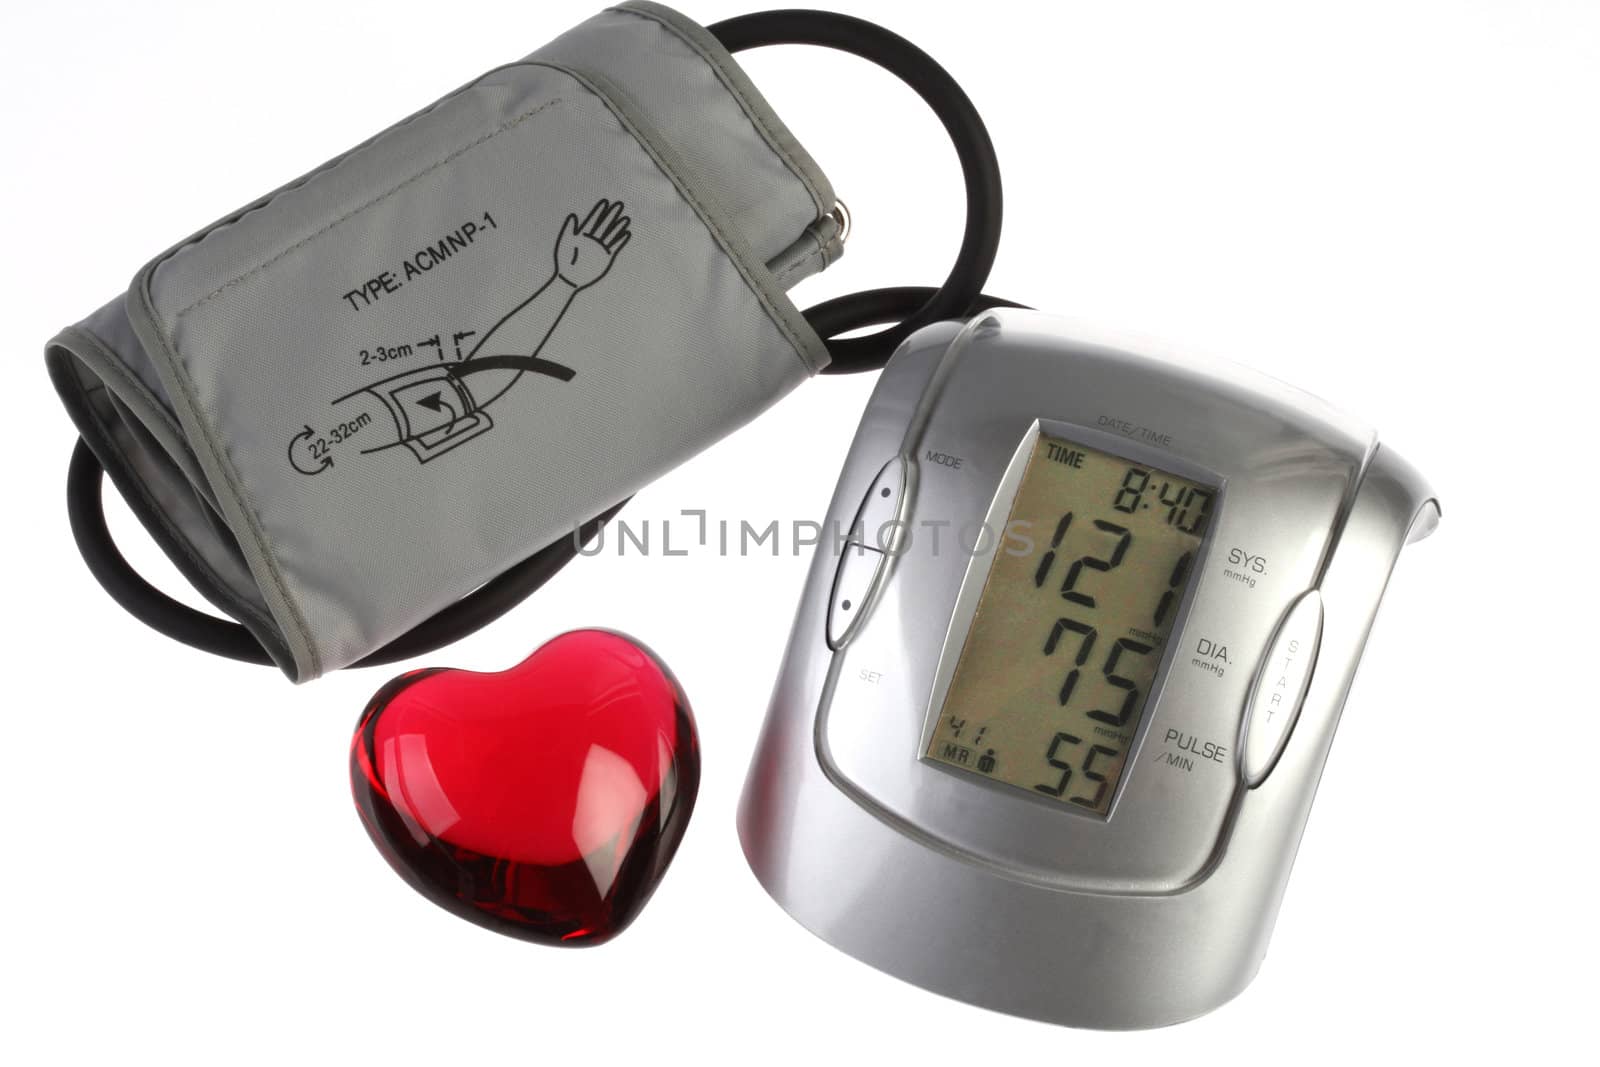 Blood pressure gauge indicating "normal" blood pressure